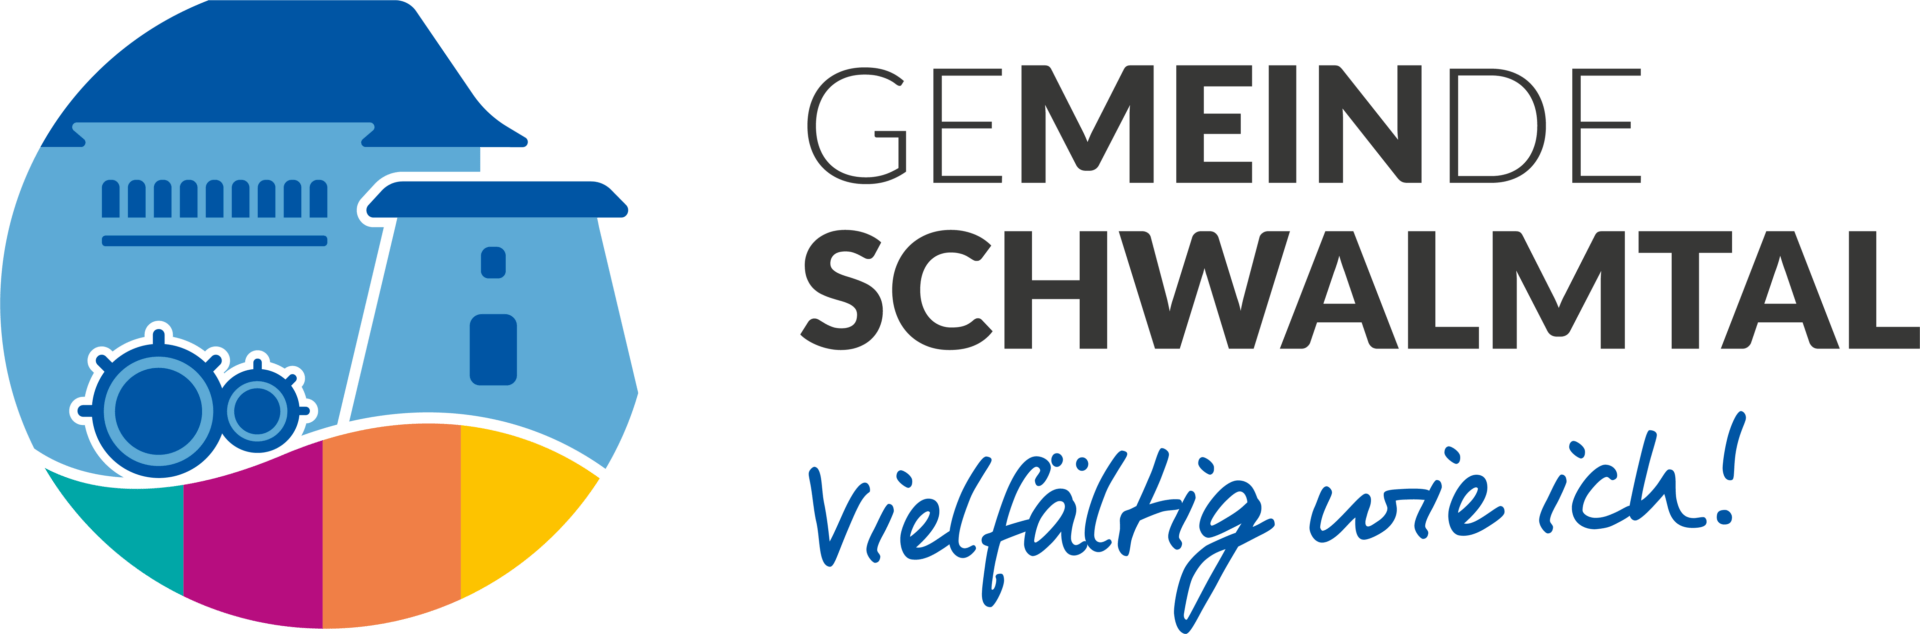 gemeinde schwalmtal logo 4c